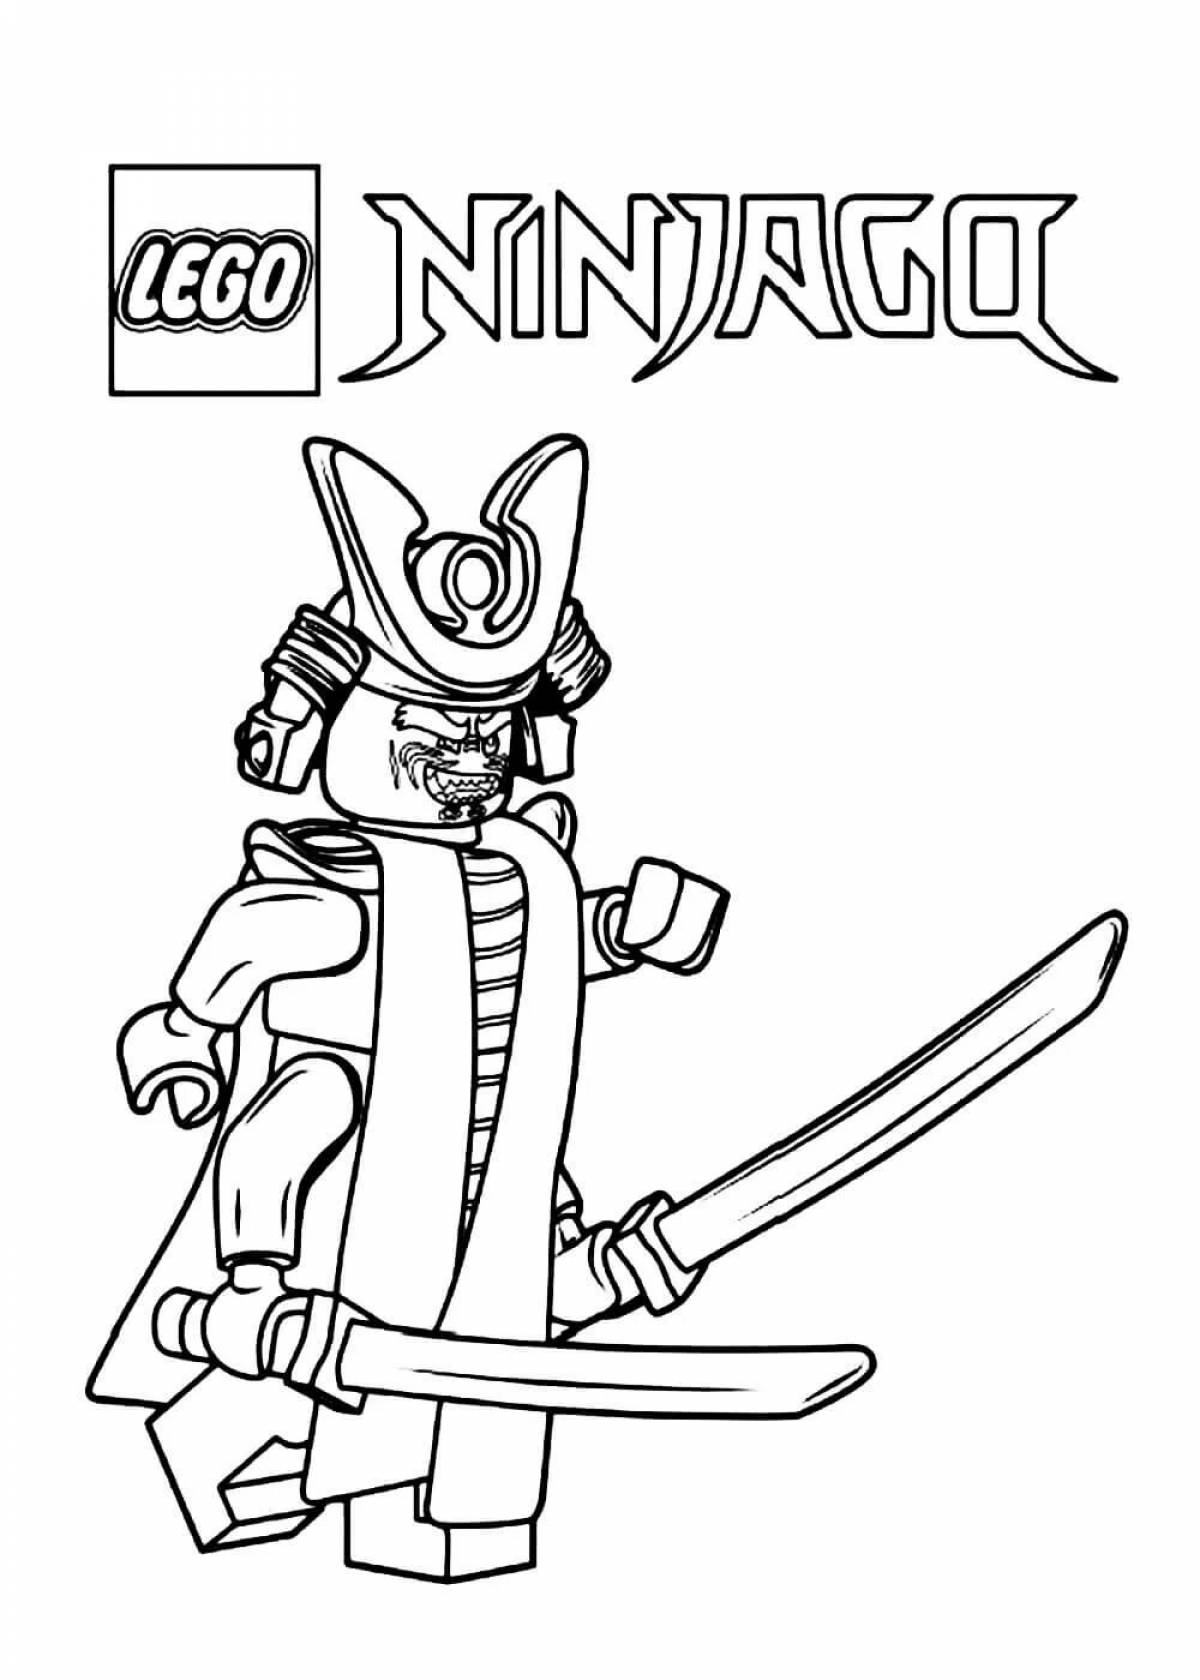 Lego ninjago movie #1